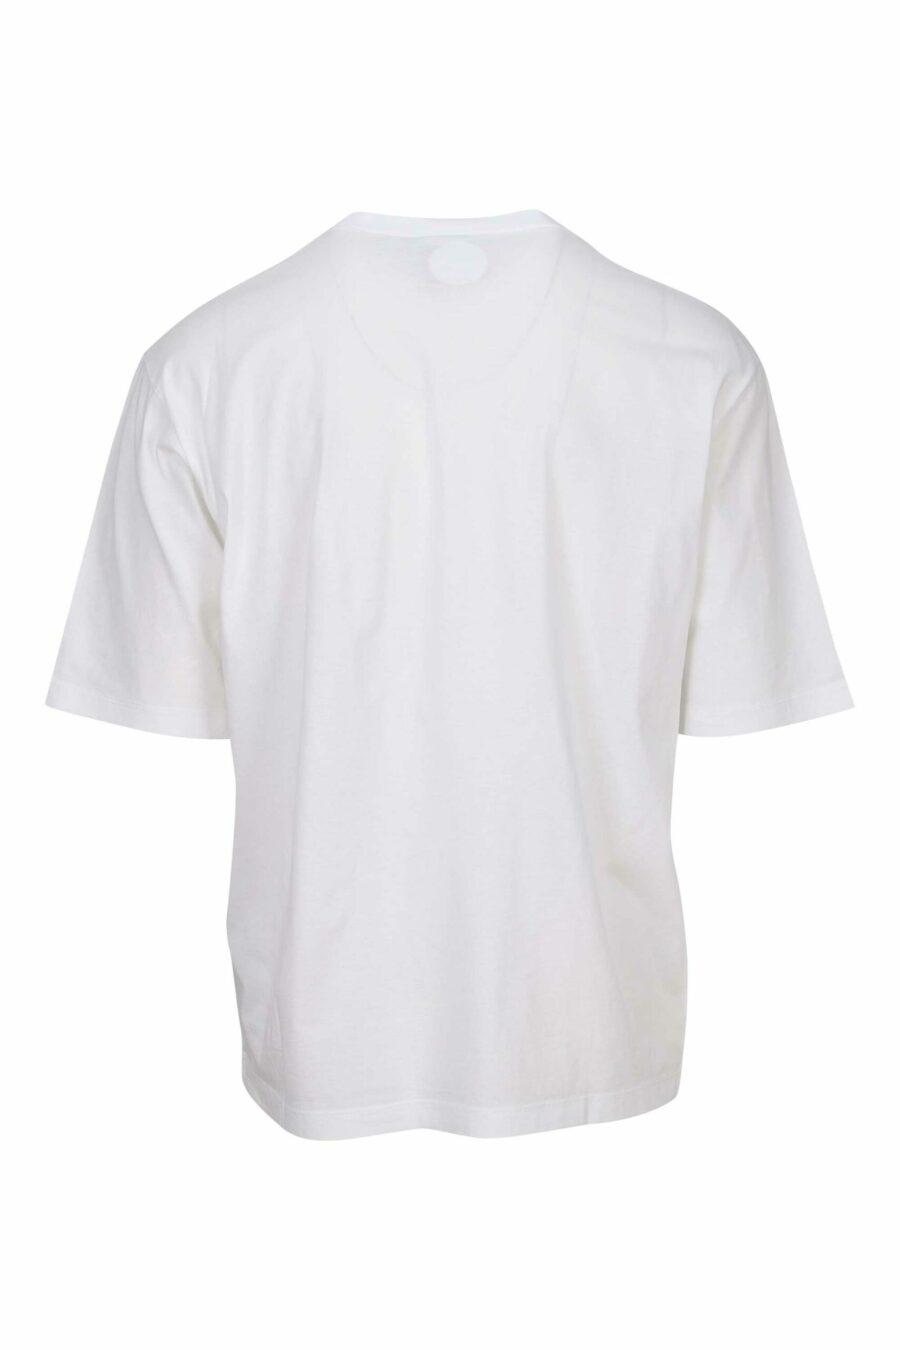 Weißes T-Shirt in Übergröße mit Kreditkartenlogo darunter - 8054148265540 1 skaliert